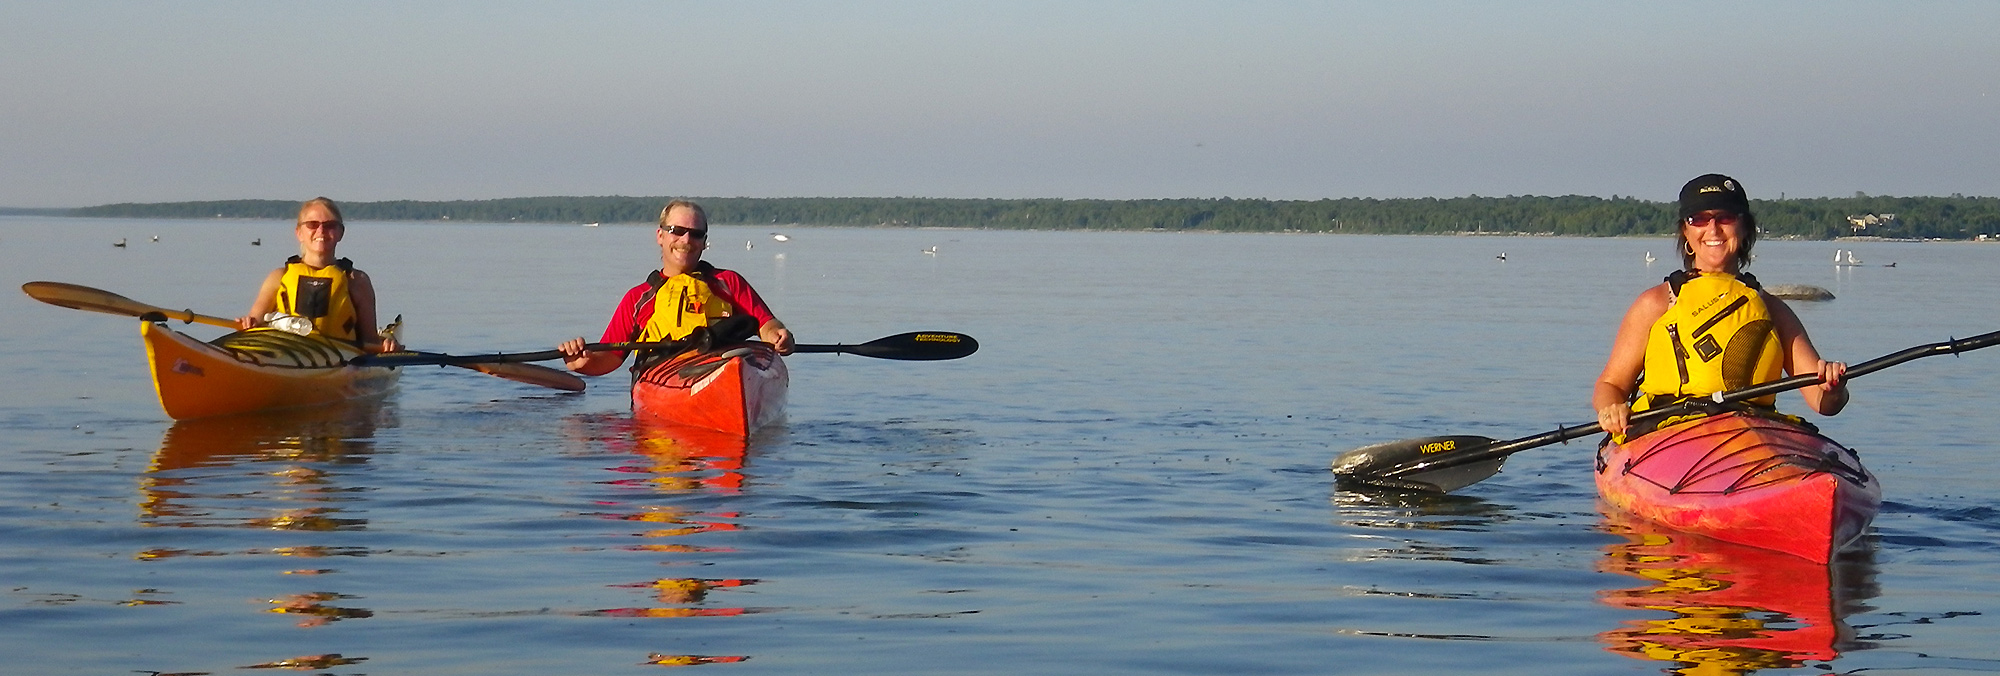 Kayaking on Lake Huron, Ontario